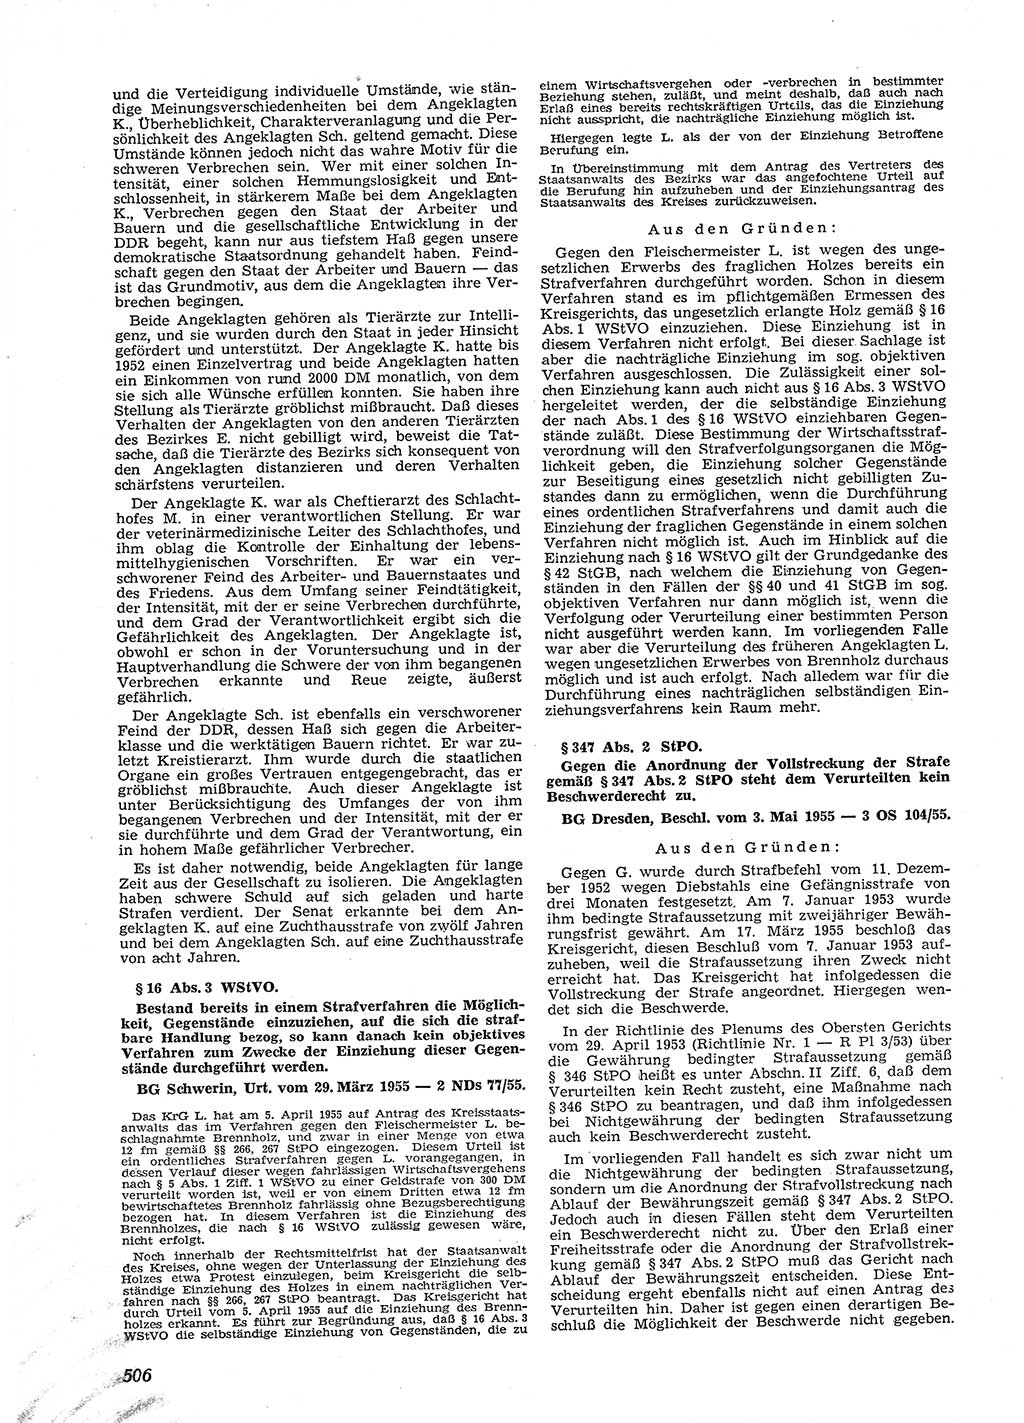 Neue Justiz (NJ), Zeitschrift für Recht und Rechtswissenschaft [Deutsche Demokratische Republik (DDR)], 9. Jahrgang 1955, Seite 506 (NJ DDR 1955, S. 506)